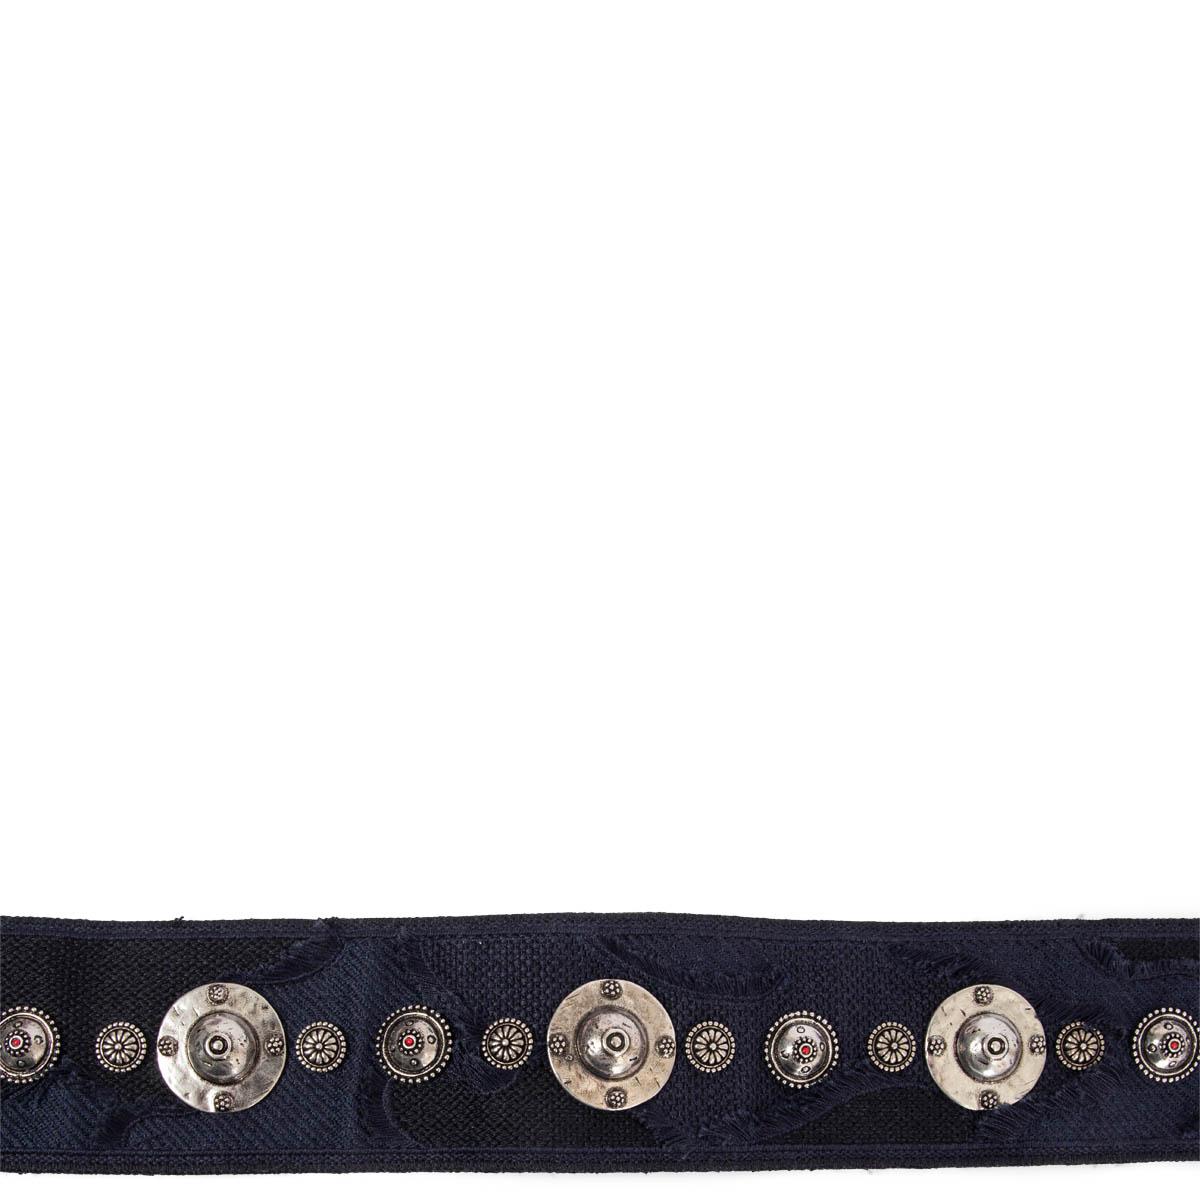 100% authentique Christian Dior Bohème ceinture à emblèmes métalliques cloutés de couleur argentée en toile bleu marine avec fermoirs de couleur or et garniture en cuir noir. A été porté et est en excellent état. 

2020